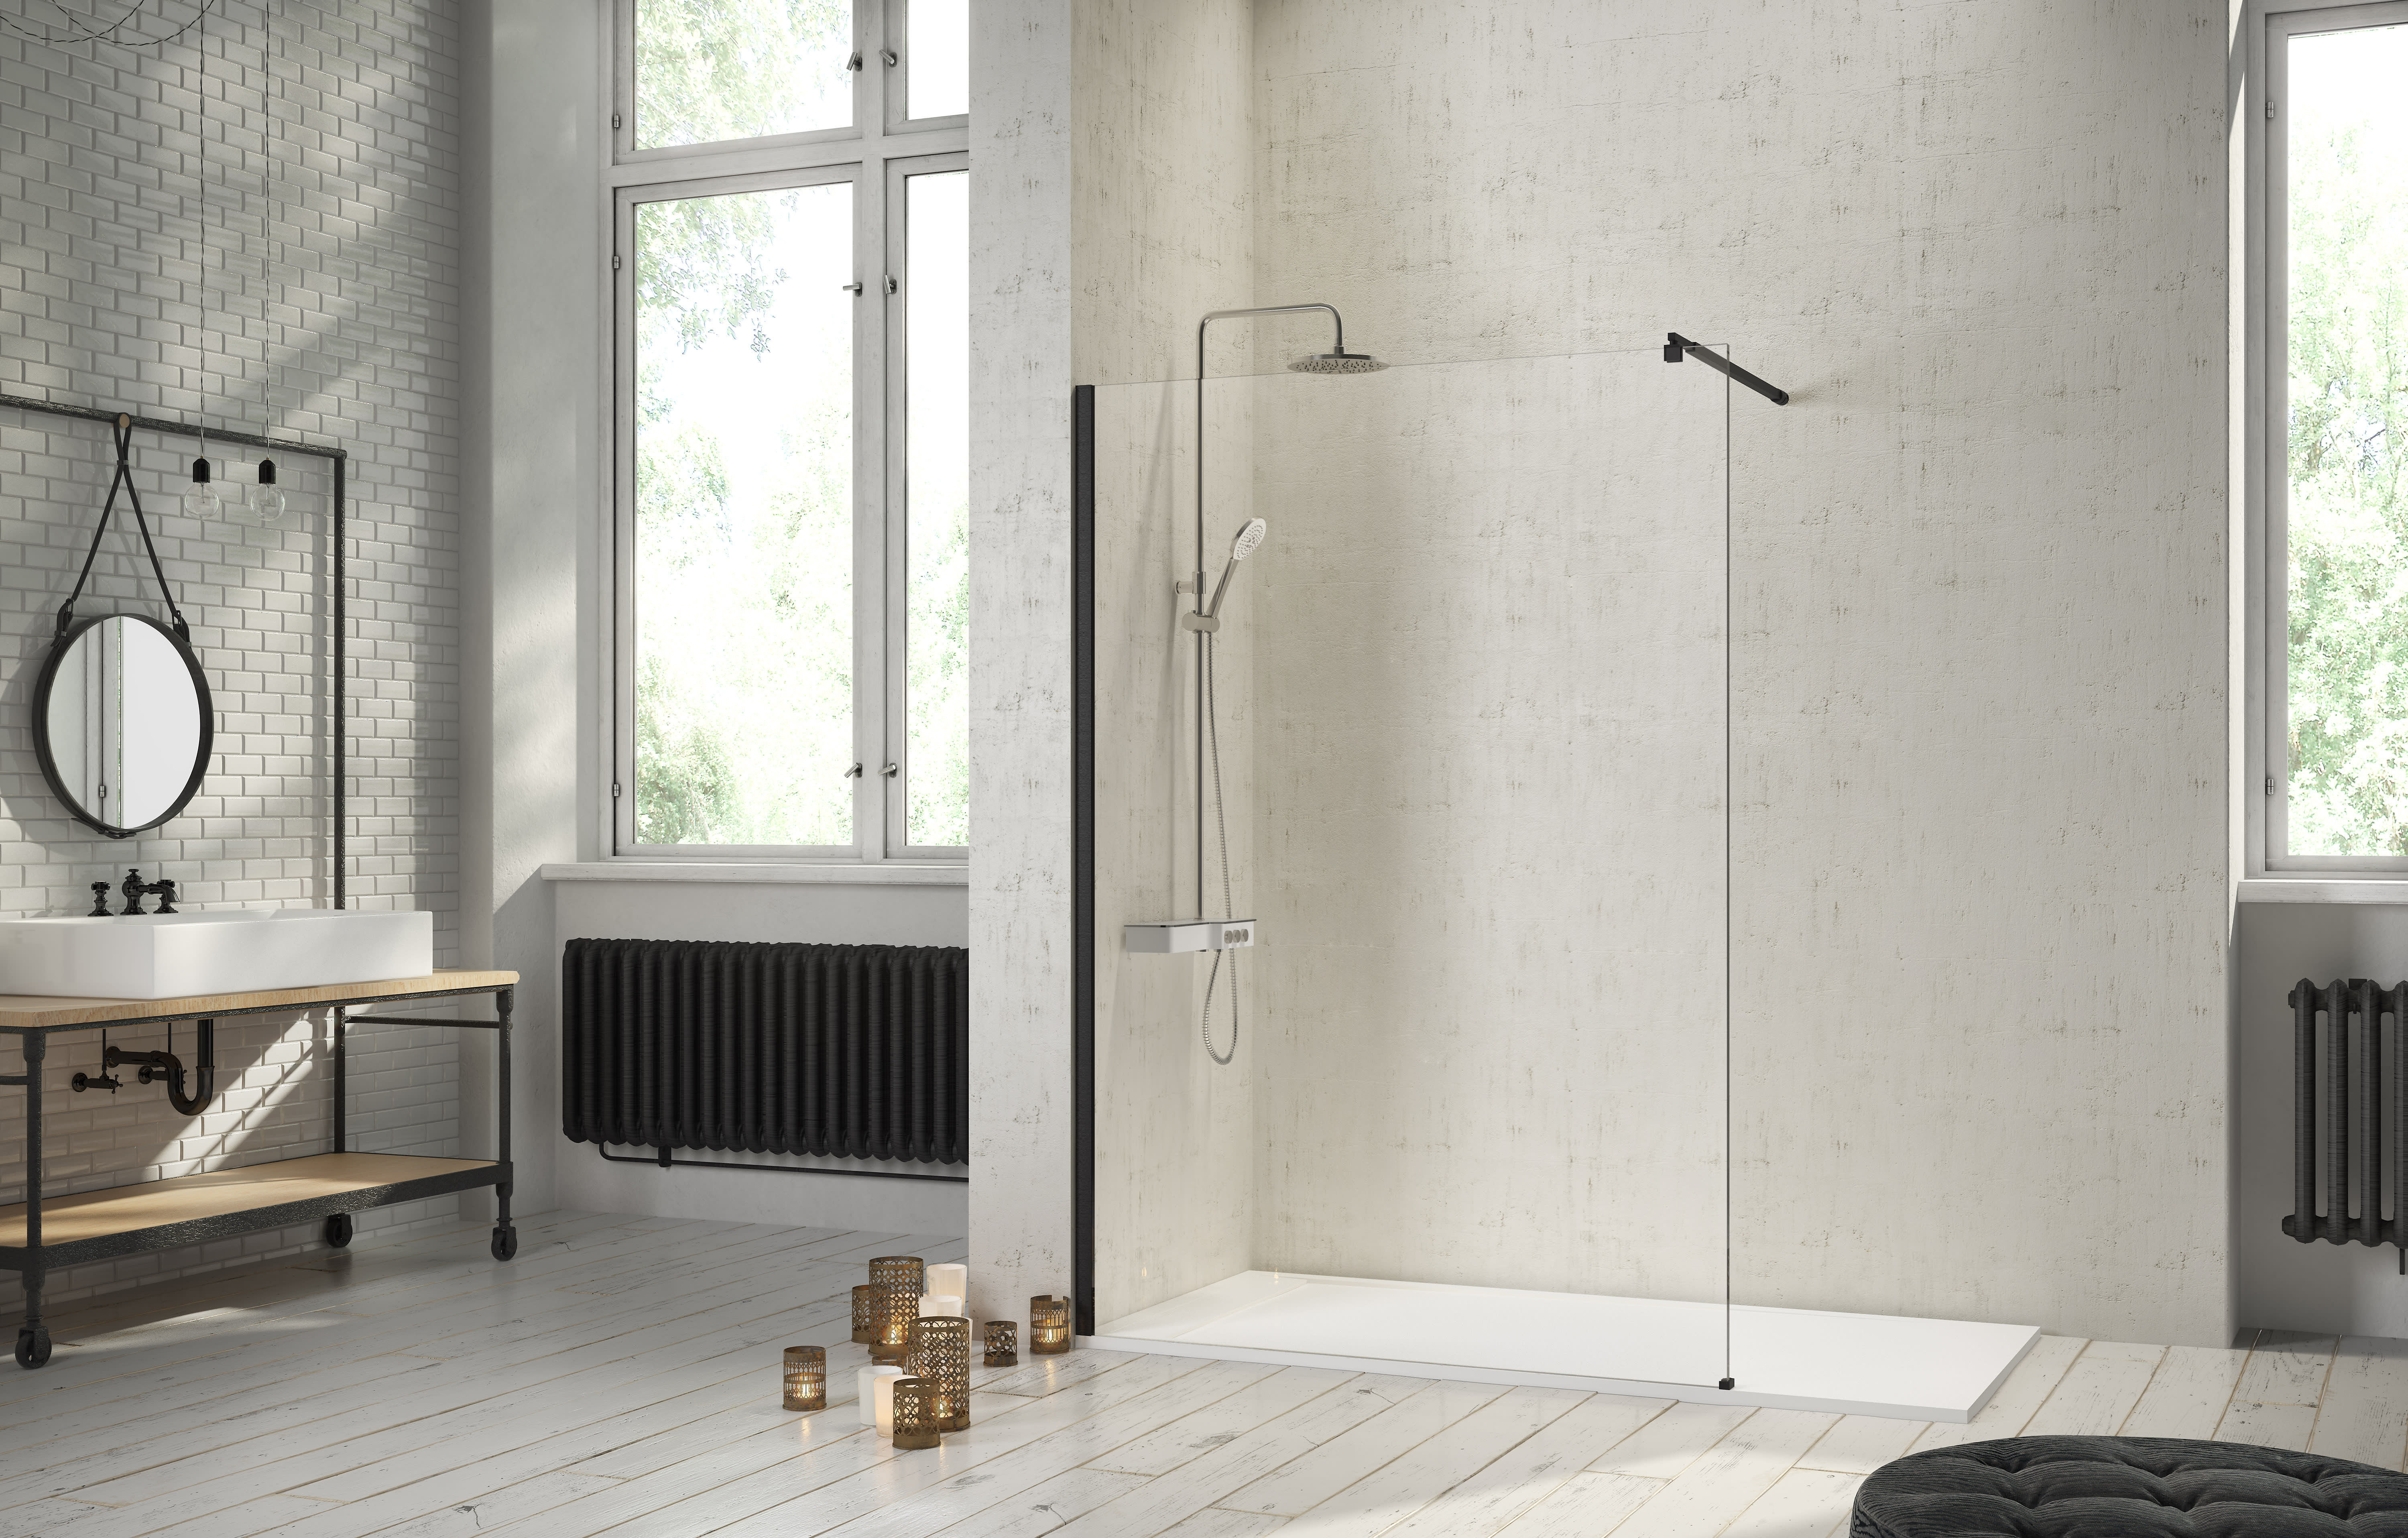 ➤ Mampara de ducha fija más abatible ➤ serie fresh modelo FR423